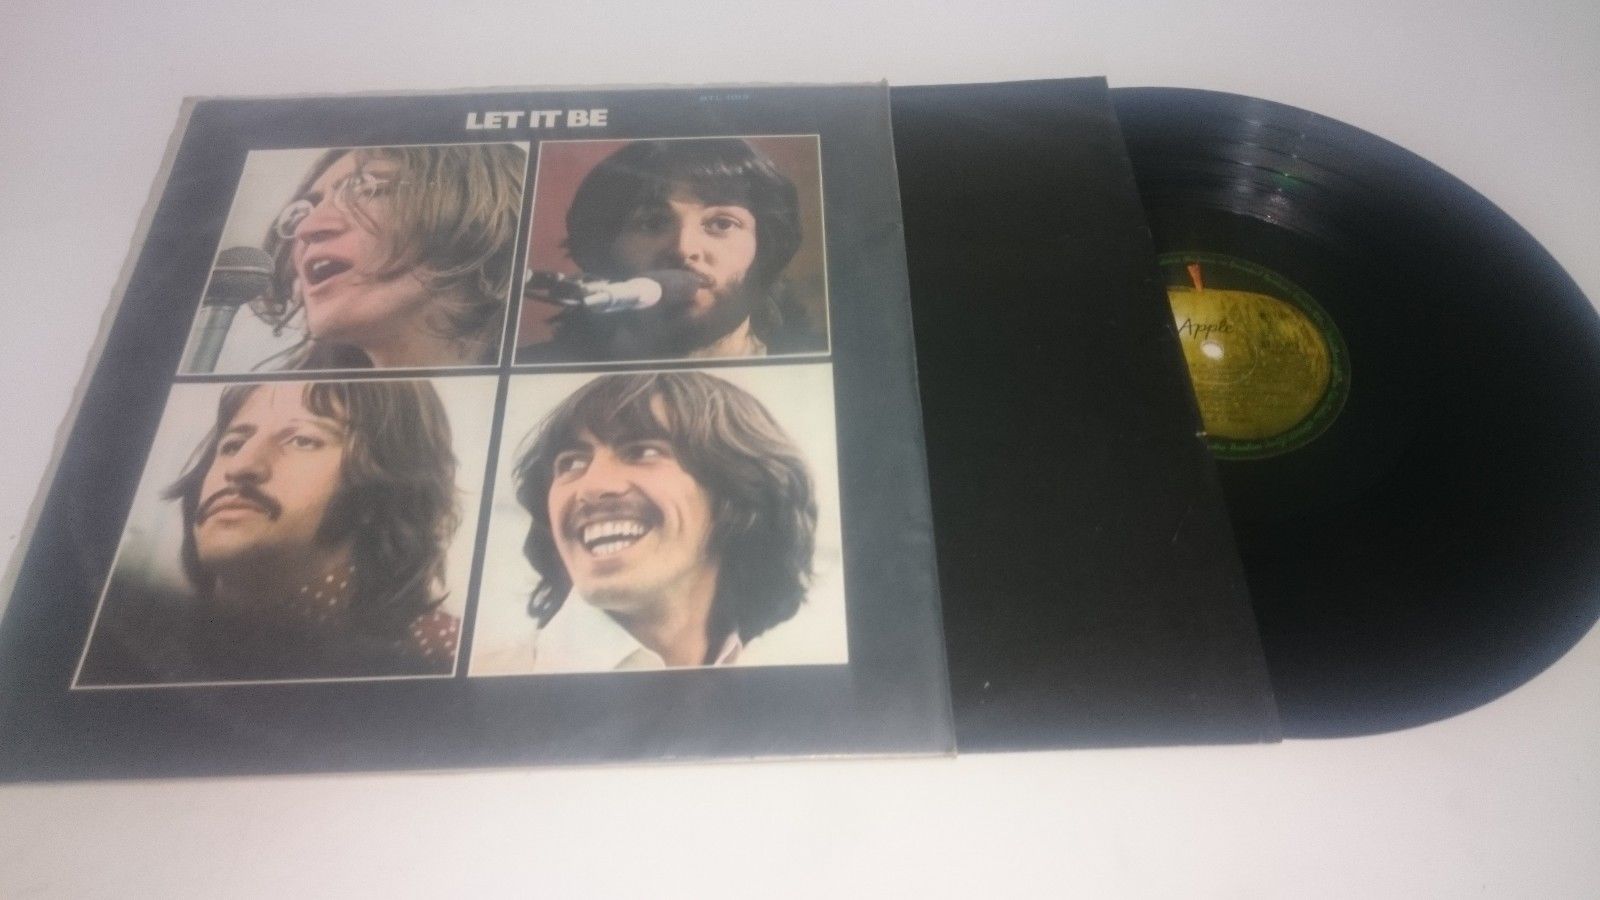 The Beatles - Let It Be - LP Brazil - 1970 - BTL-1013 - MONO